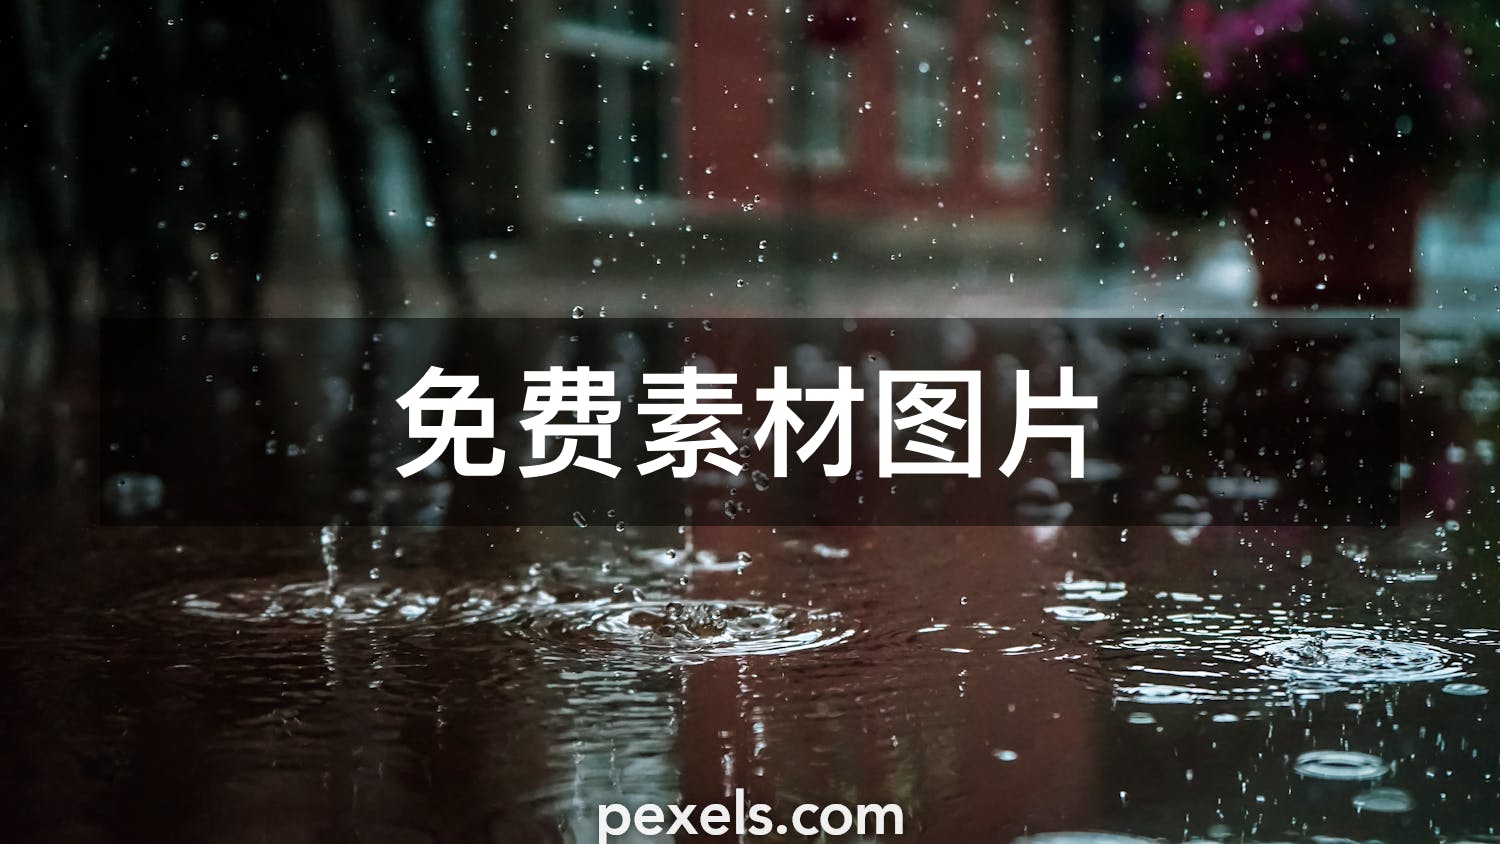 10 000 最精彩的雨图片 100 免费下载 Pexels 素材图片